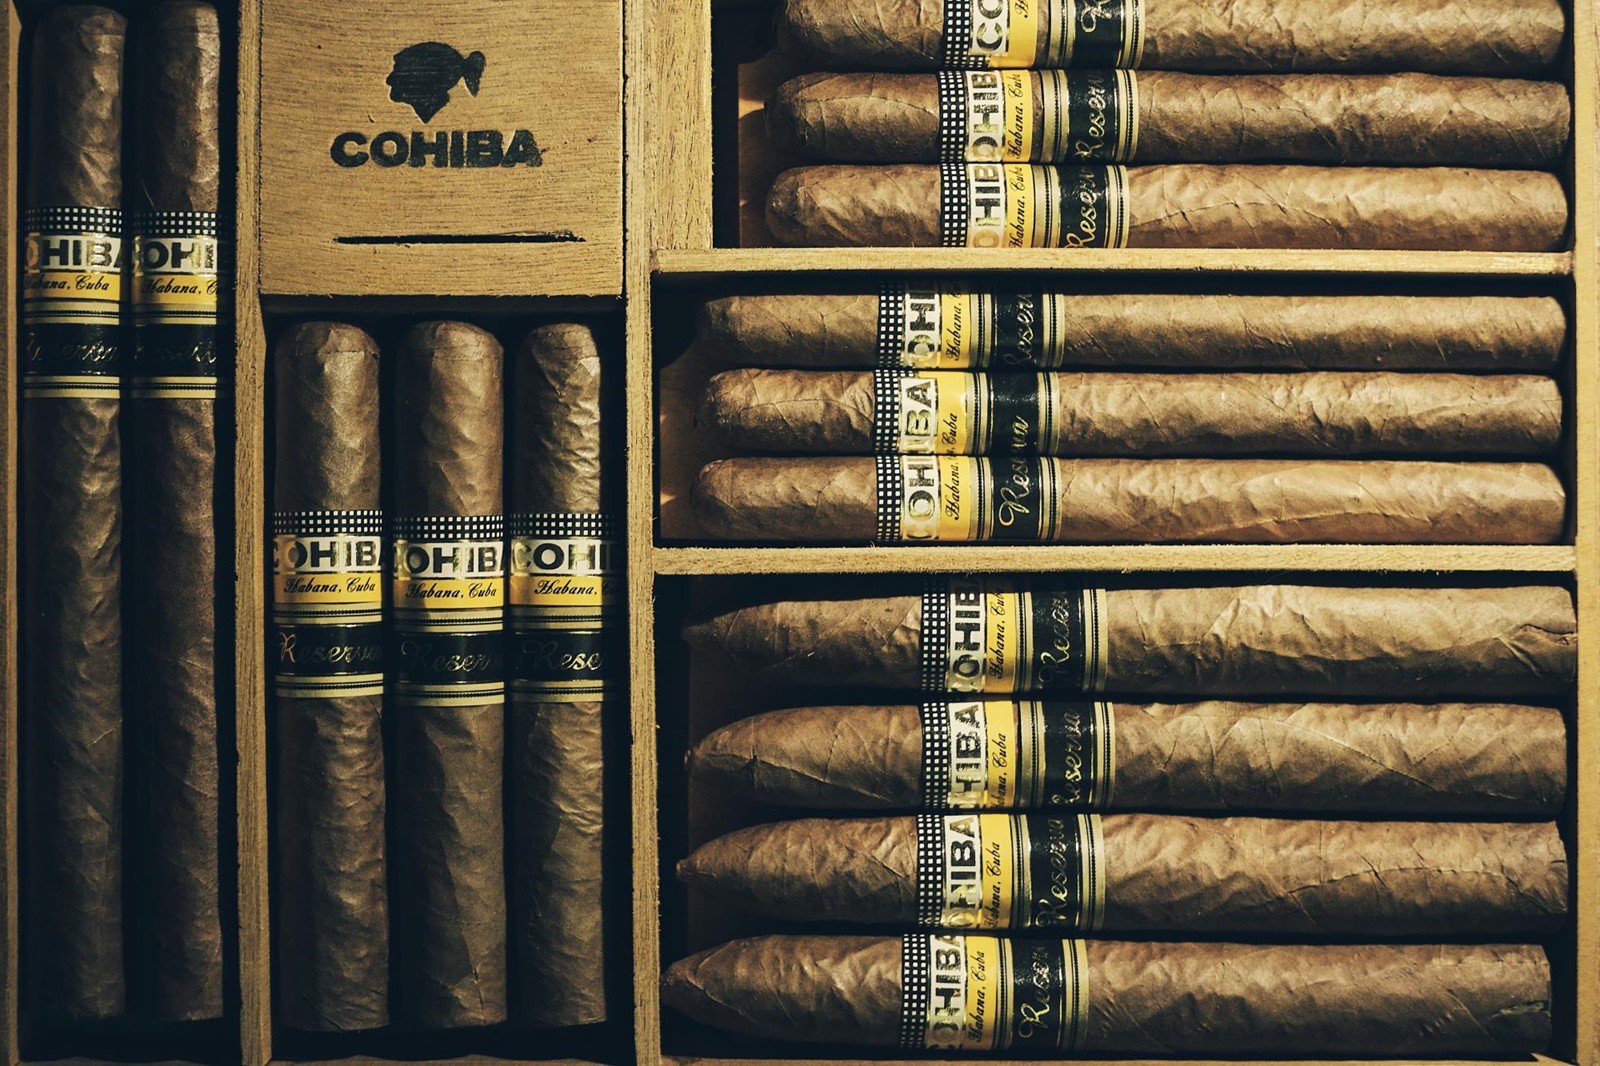 Zigarre Cohiba : Die besten kubanischen Zigarren, schnelle und sichere  Lieferung